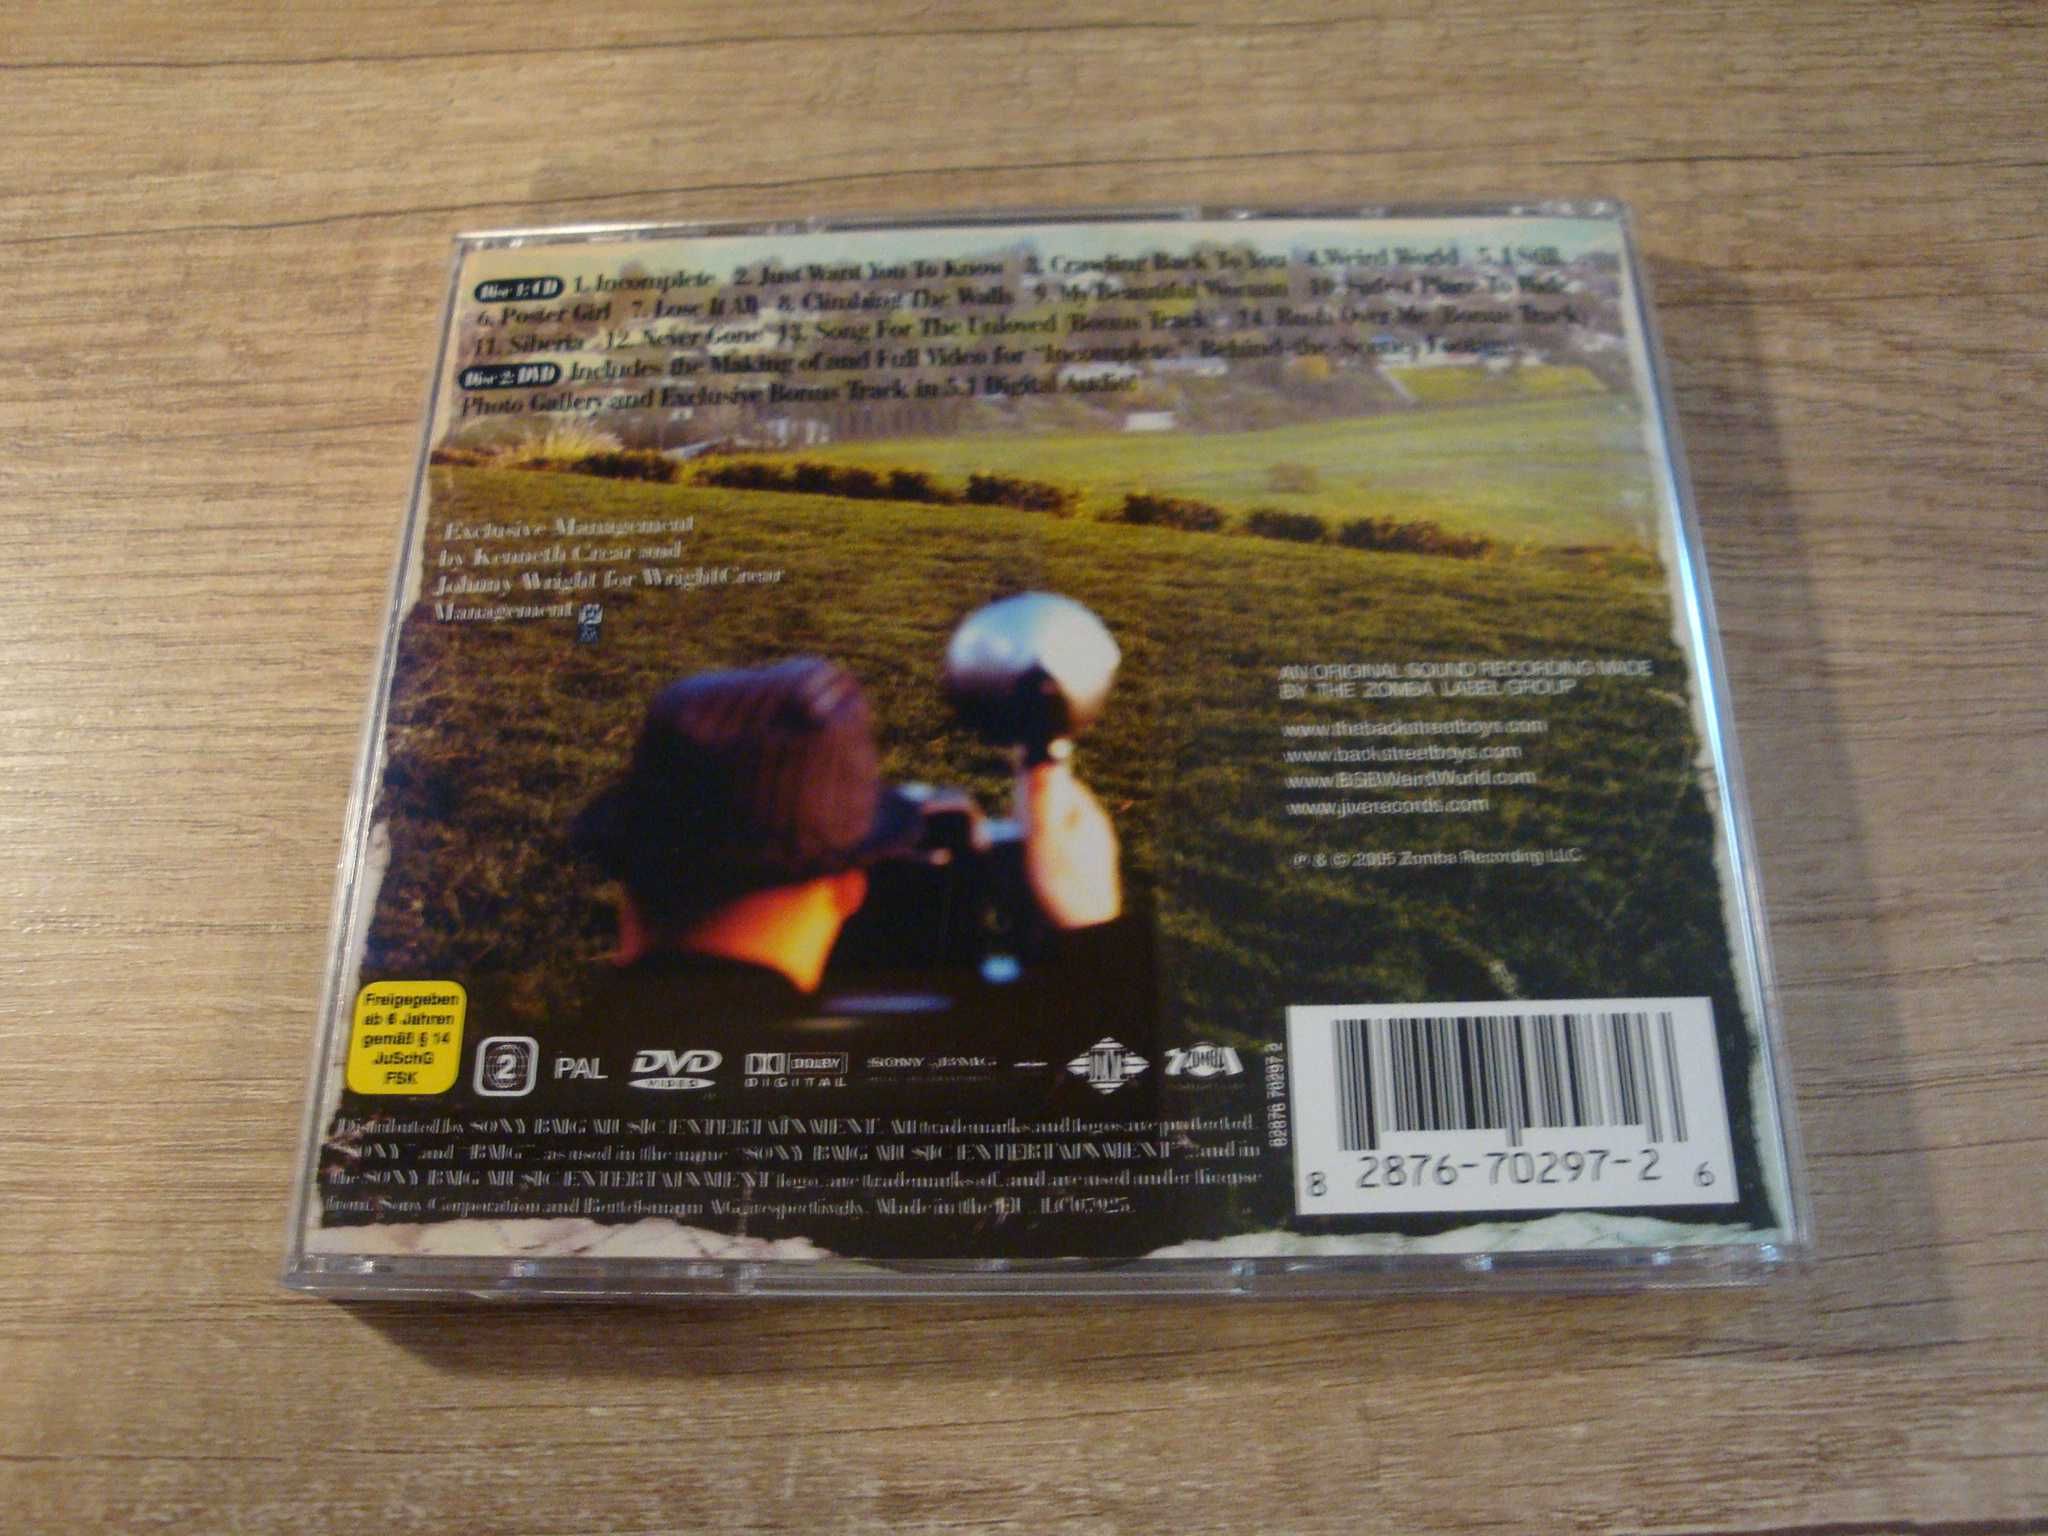 Backstreet Boys – Never Gone (CD+DVD)